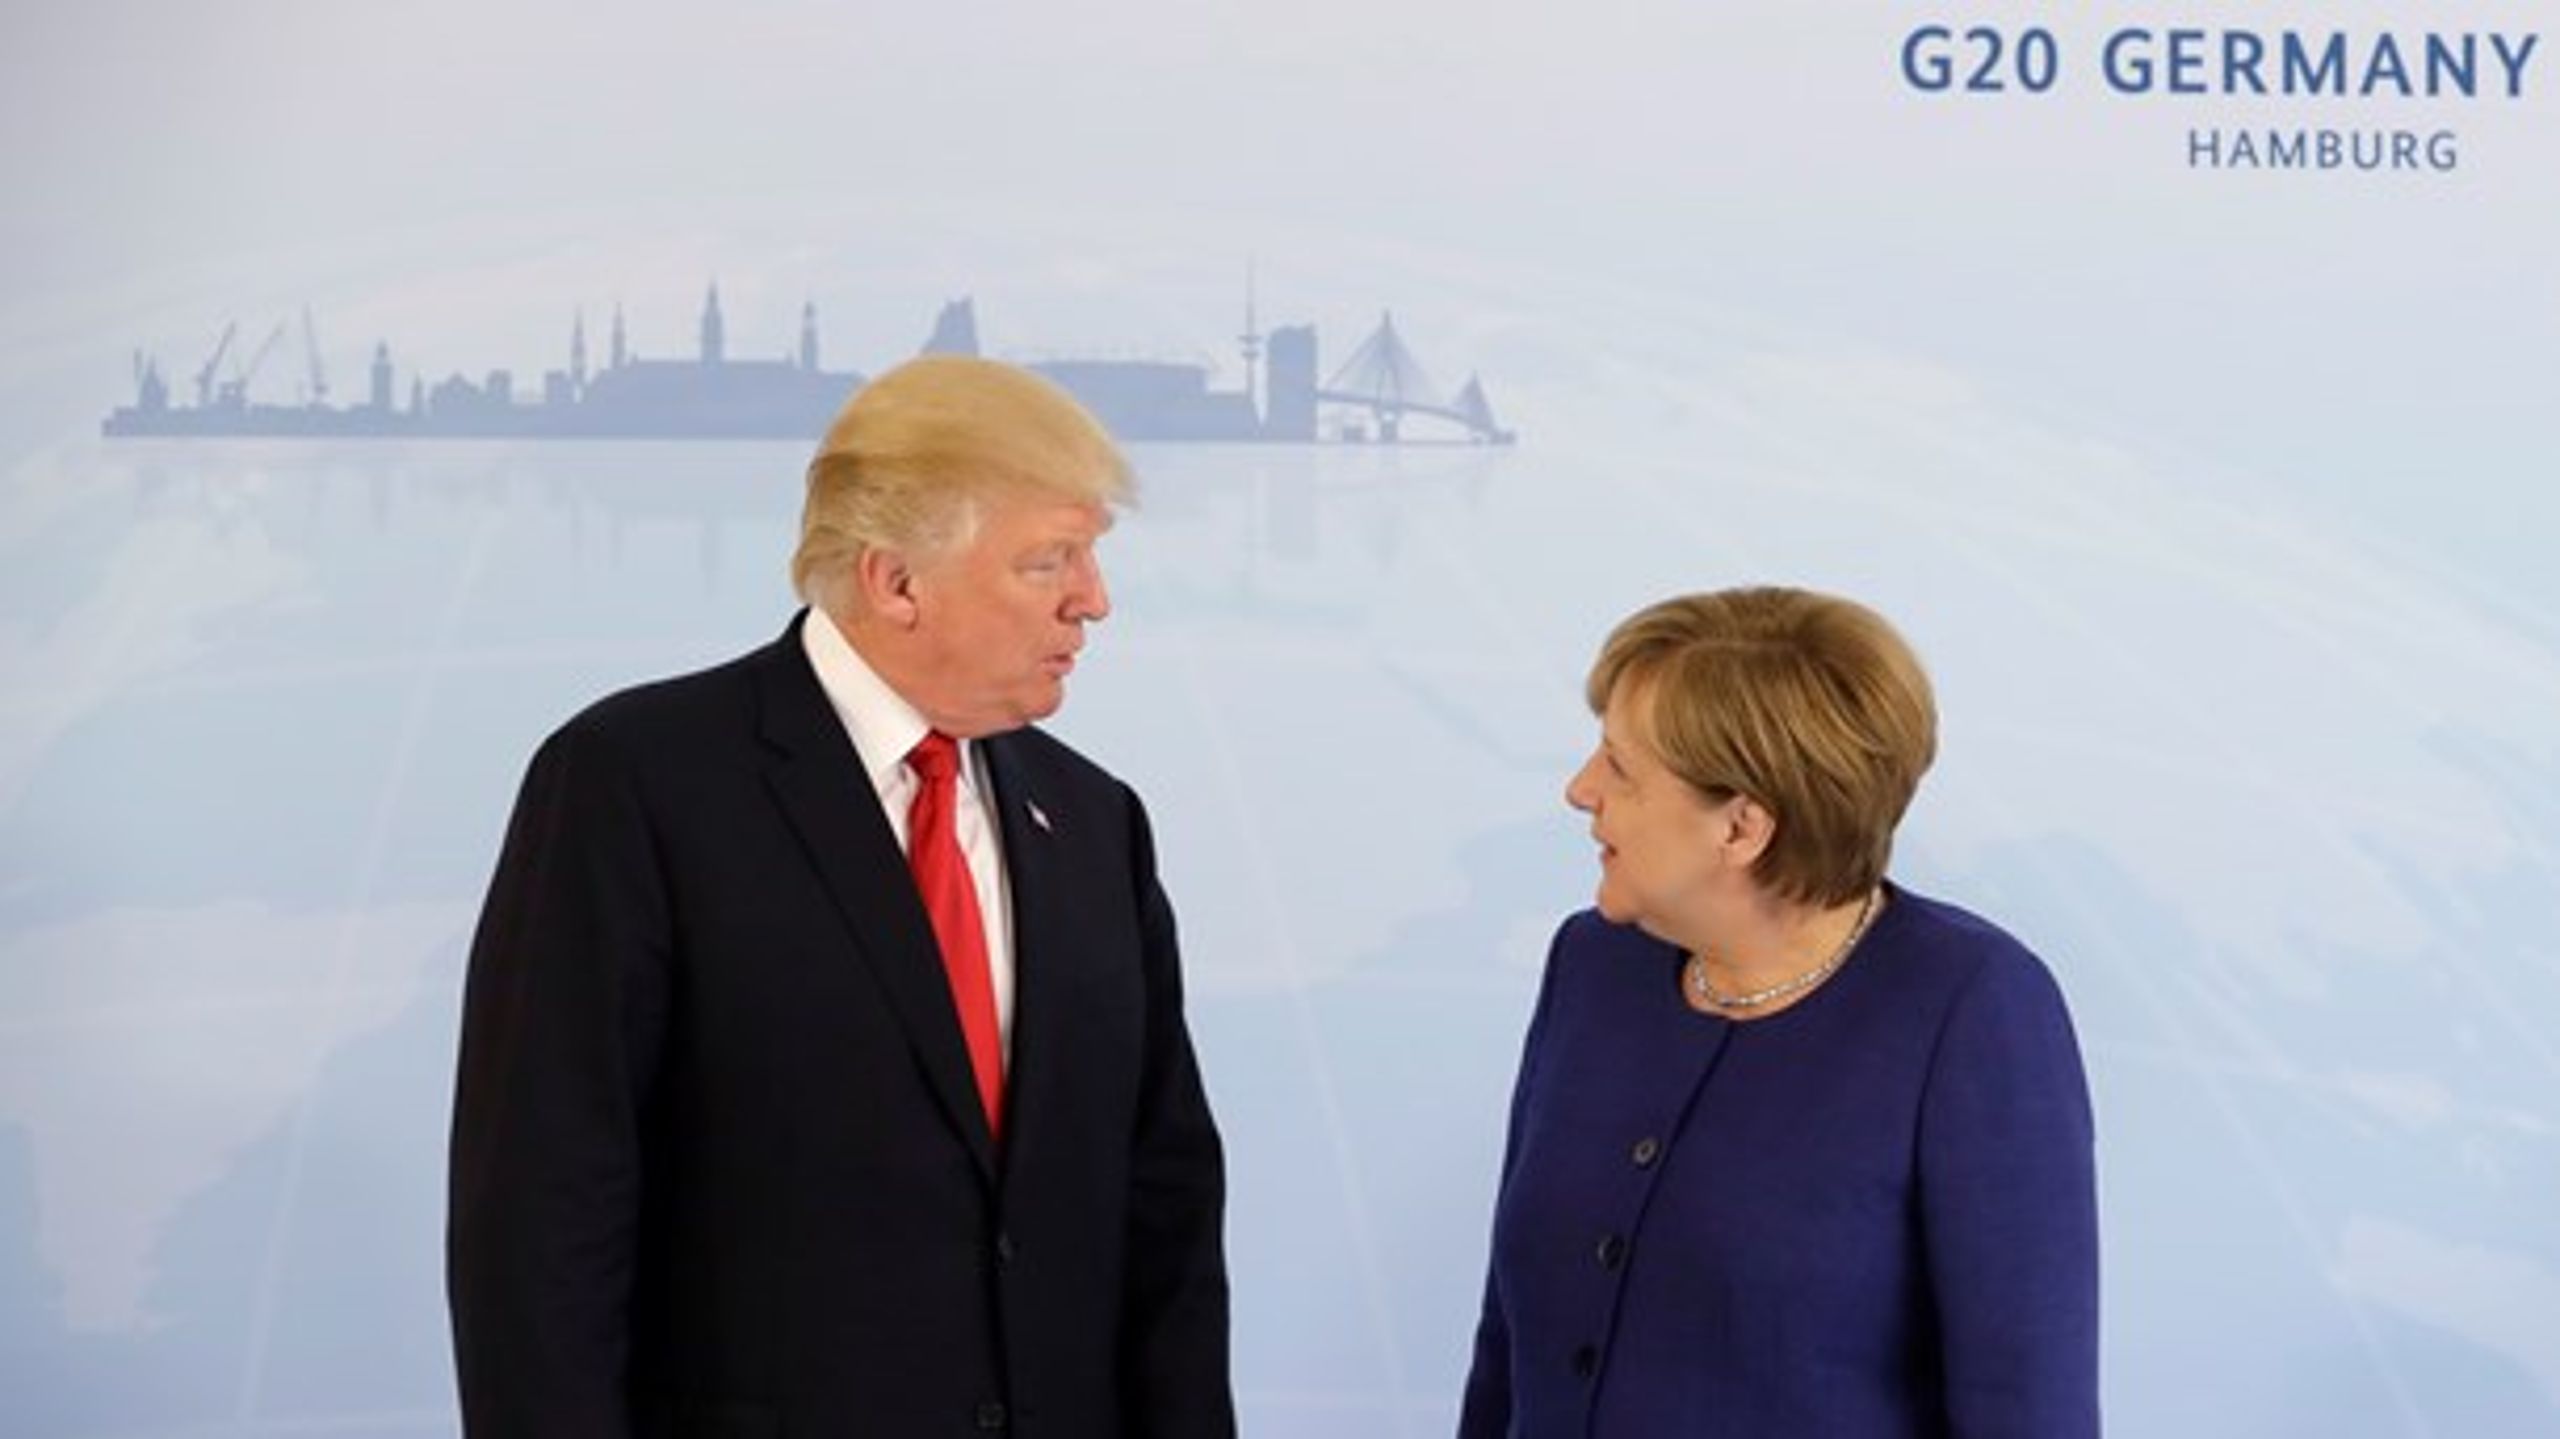 Donald Trump og Angela Merkel ser under G20-opvarmningen allerede ud til at være bedre venner, end da den tyske kansler aflagde visit i Washington i marts.